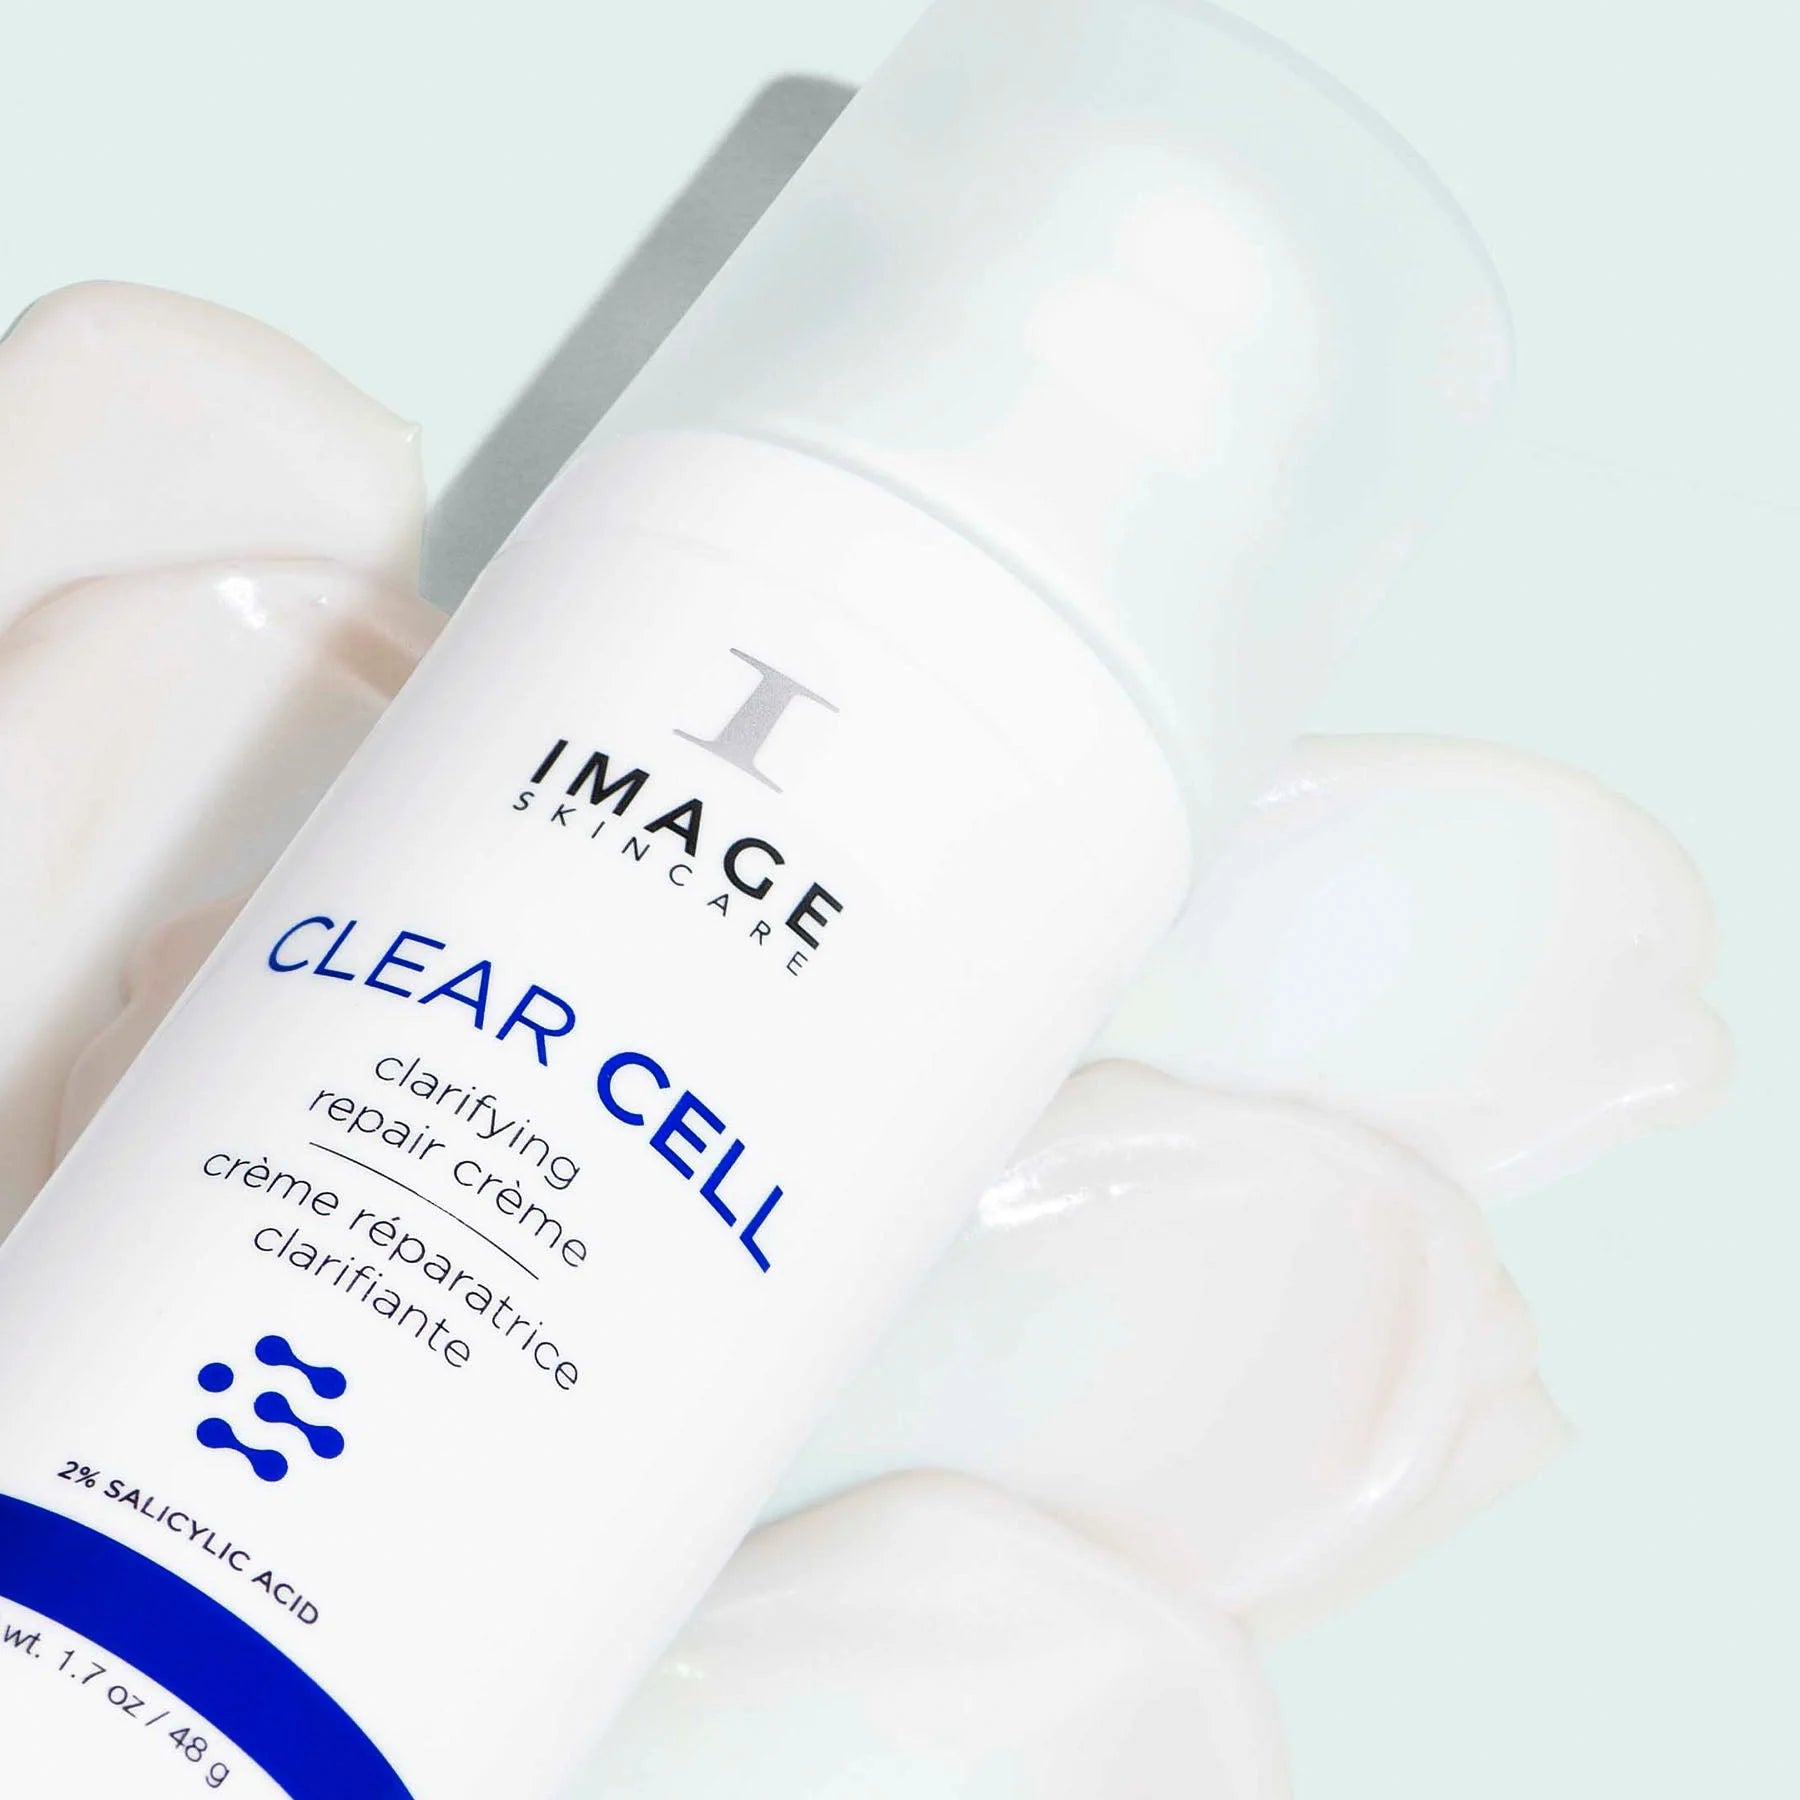 Clear Cell Clarifying Repair Cream